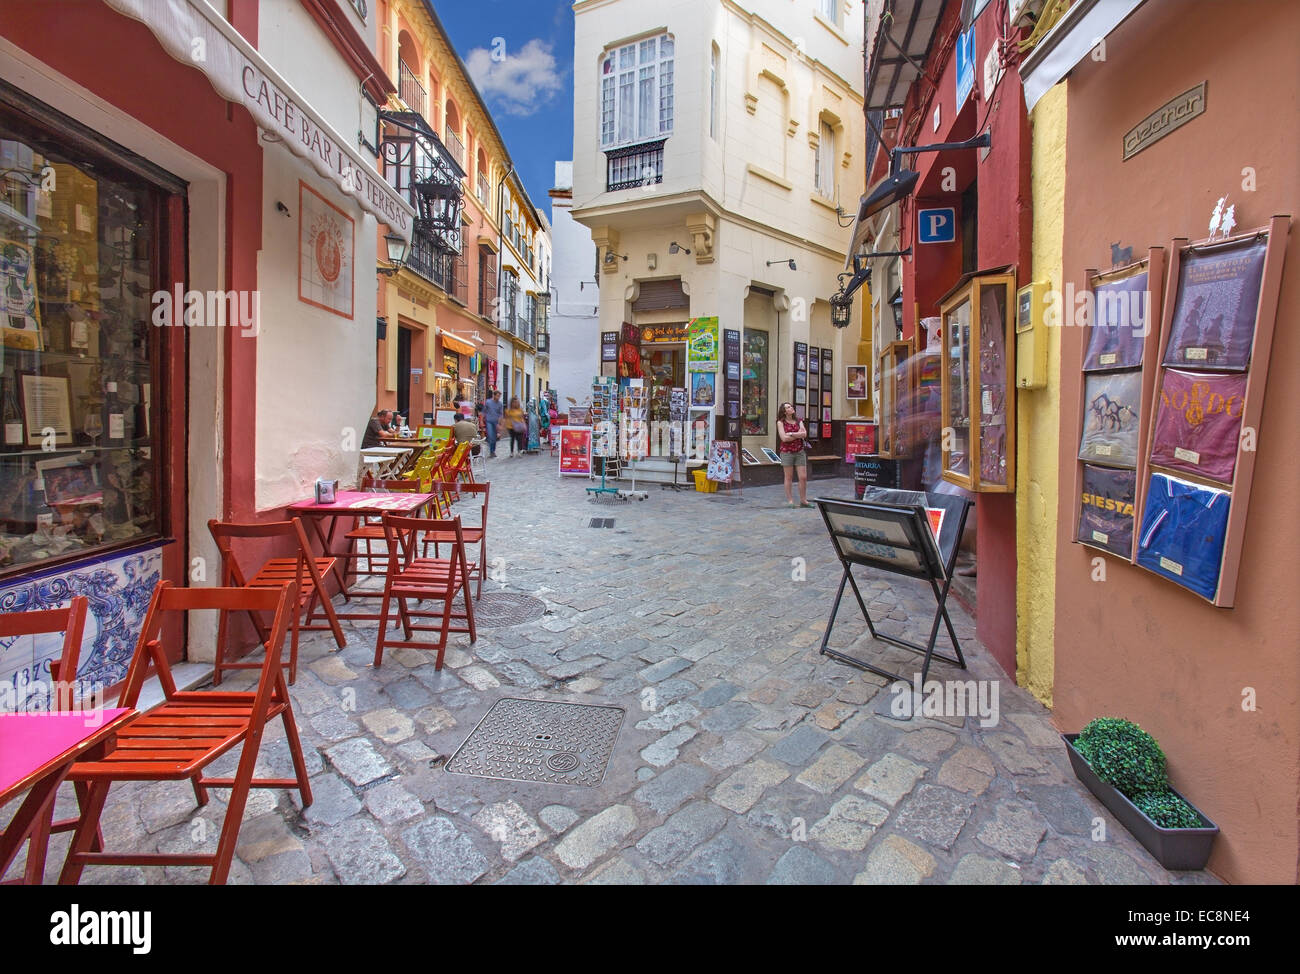 Sevilla - callejones con tiendas y restaurantes en el distrito de Santa Cruz - la calle Ximénez de Enciso street. Foto de stock